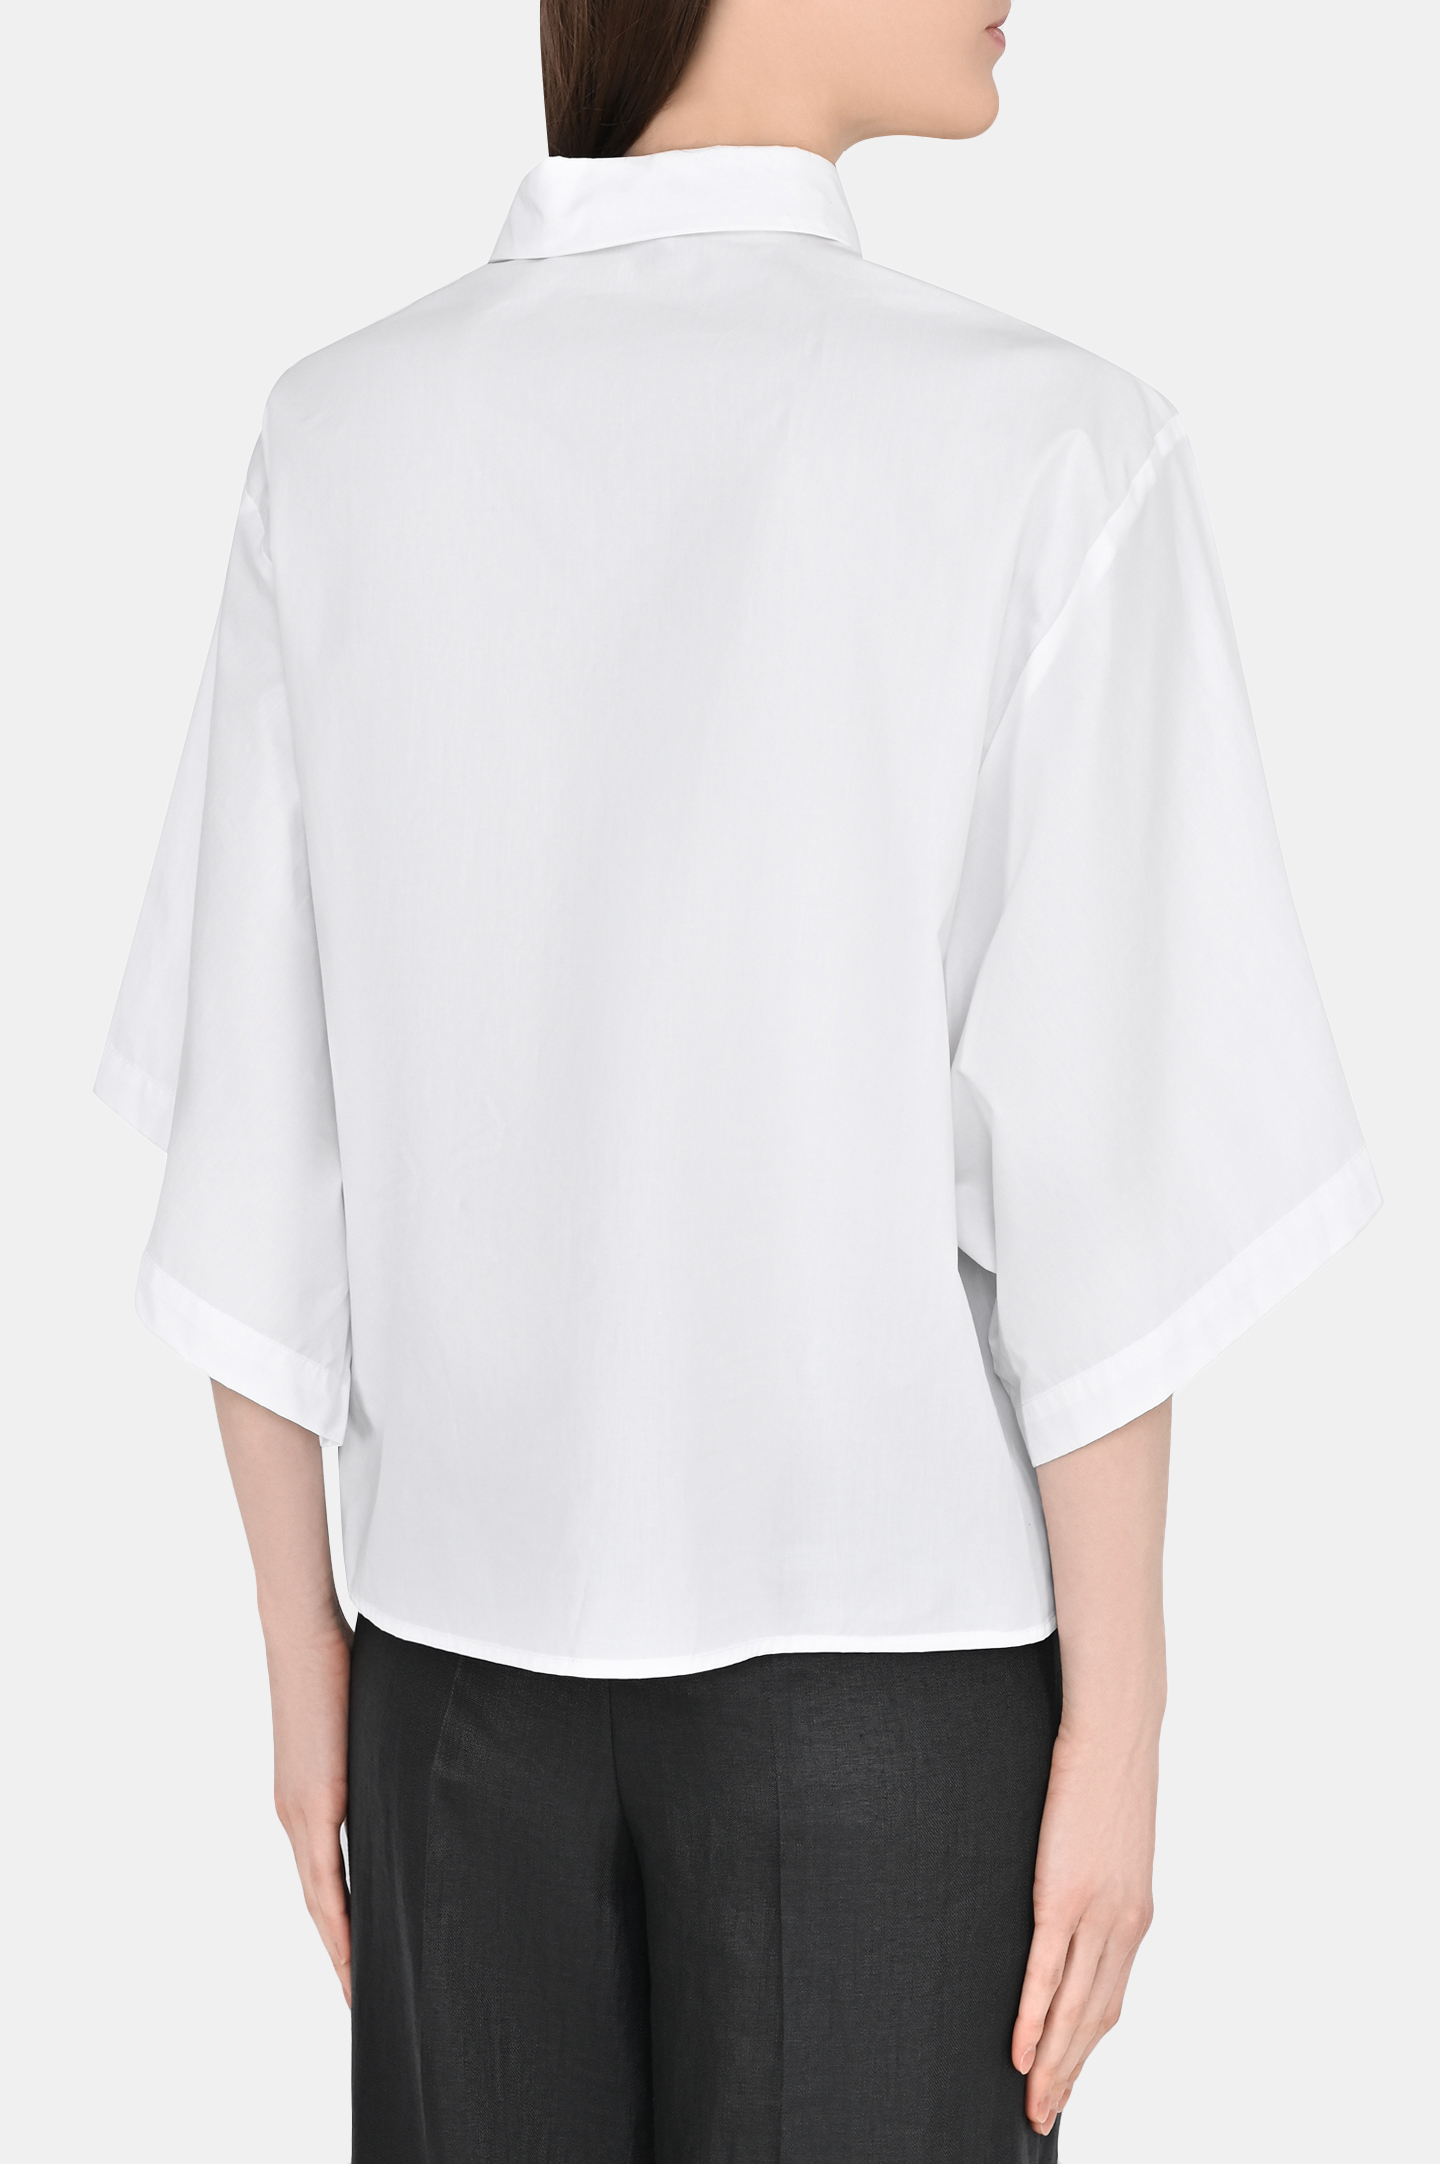 Блуза FABIANA FILIPPI CAD273B646I809, цвет: Белый, Женский